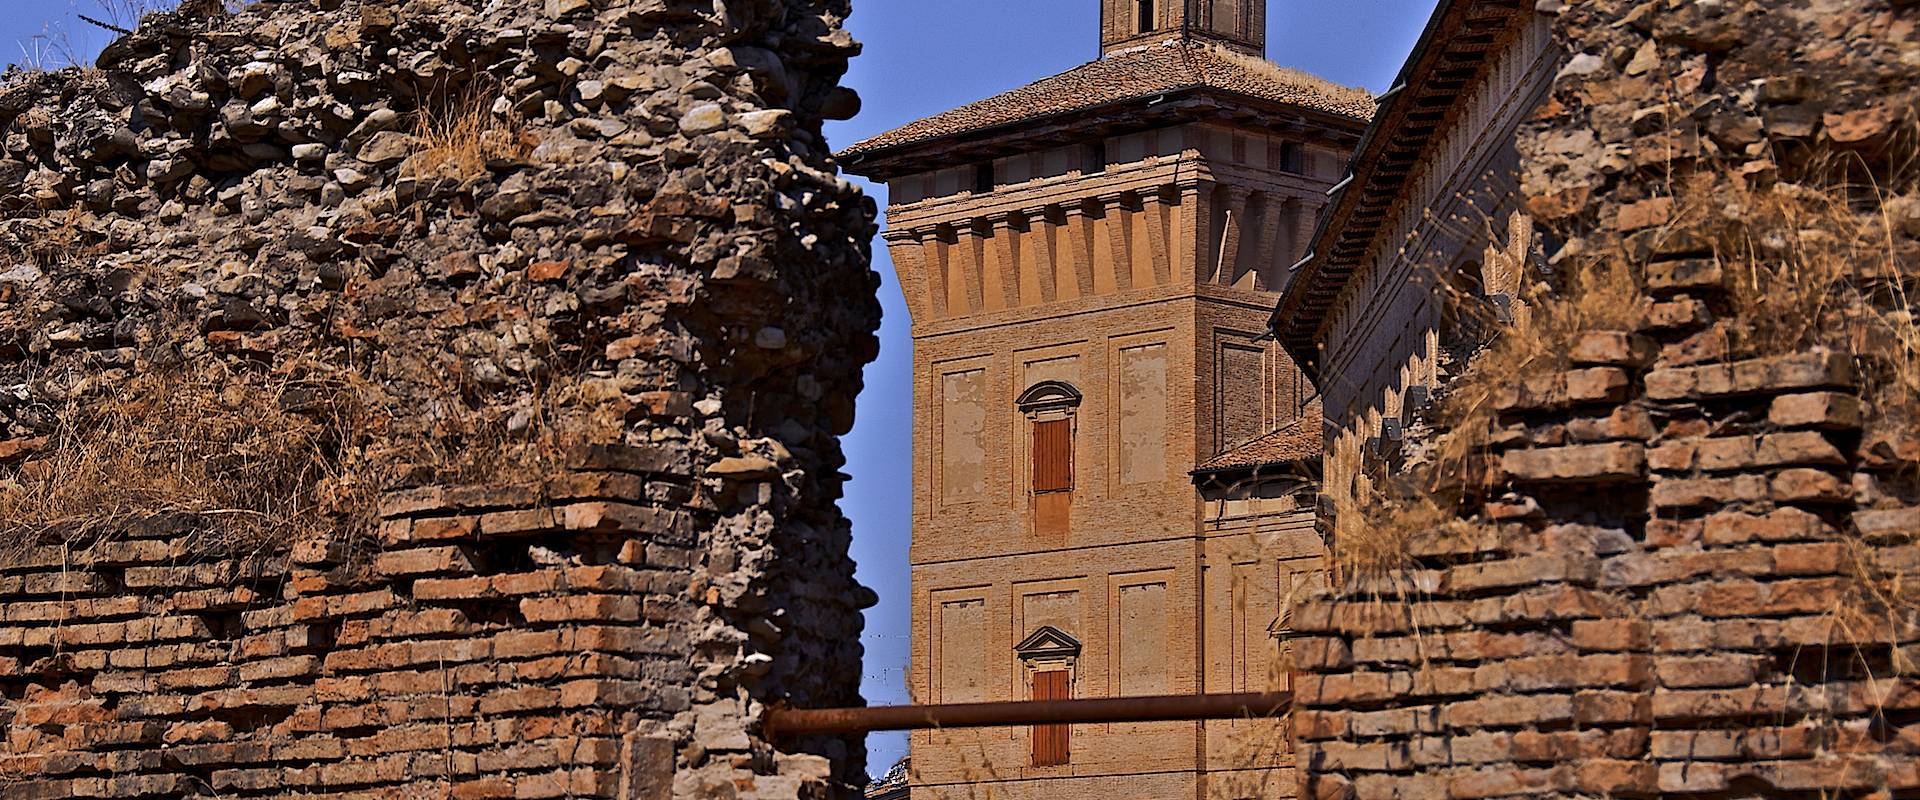 La Torre della Rocca dei Boiardo foto di Caba2011